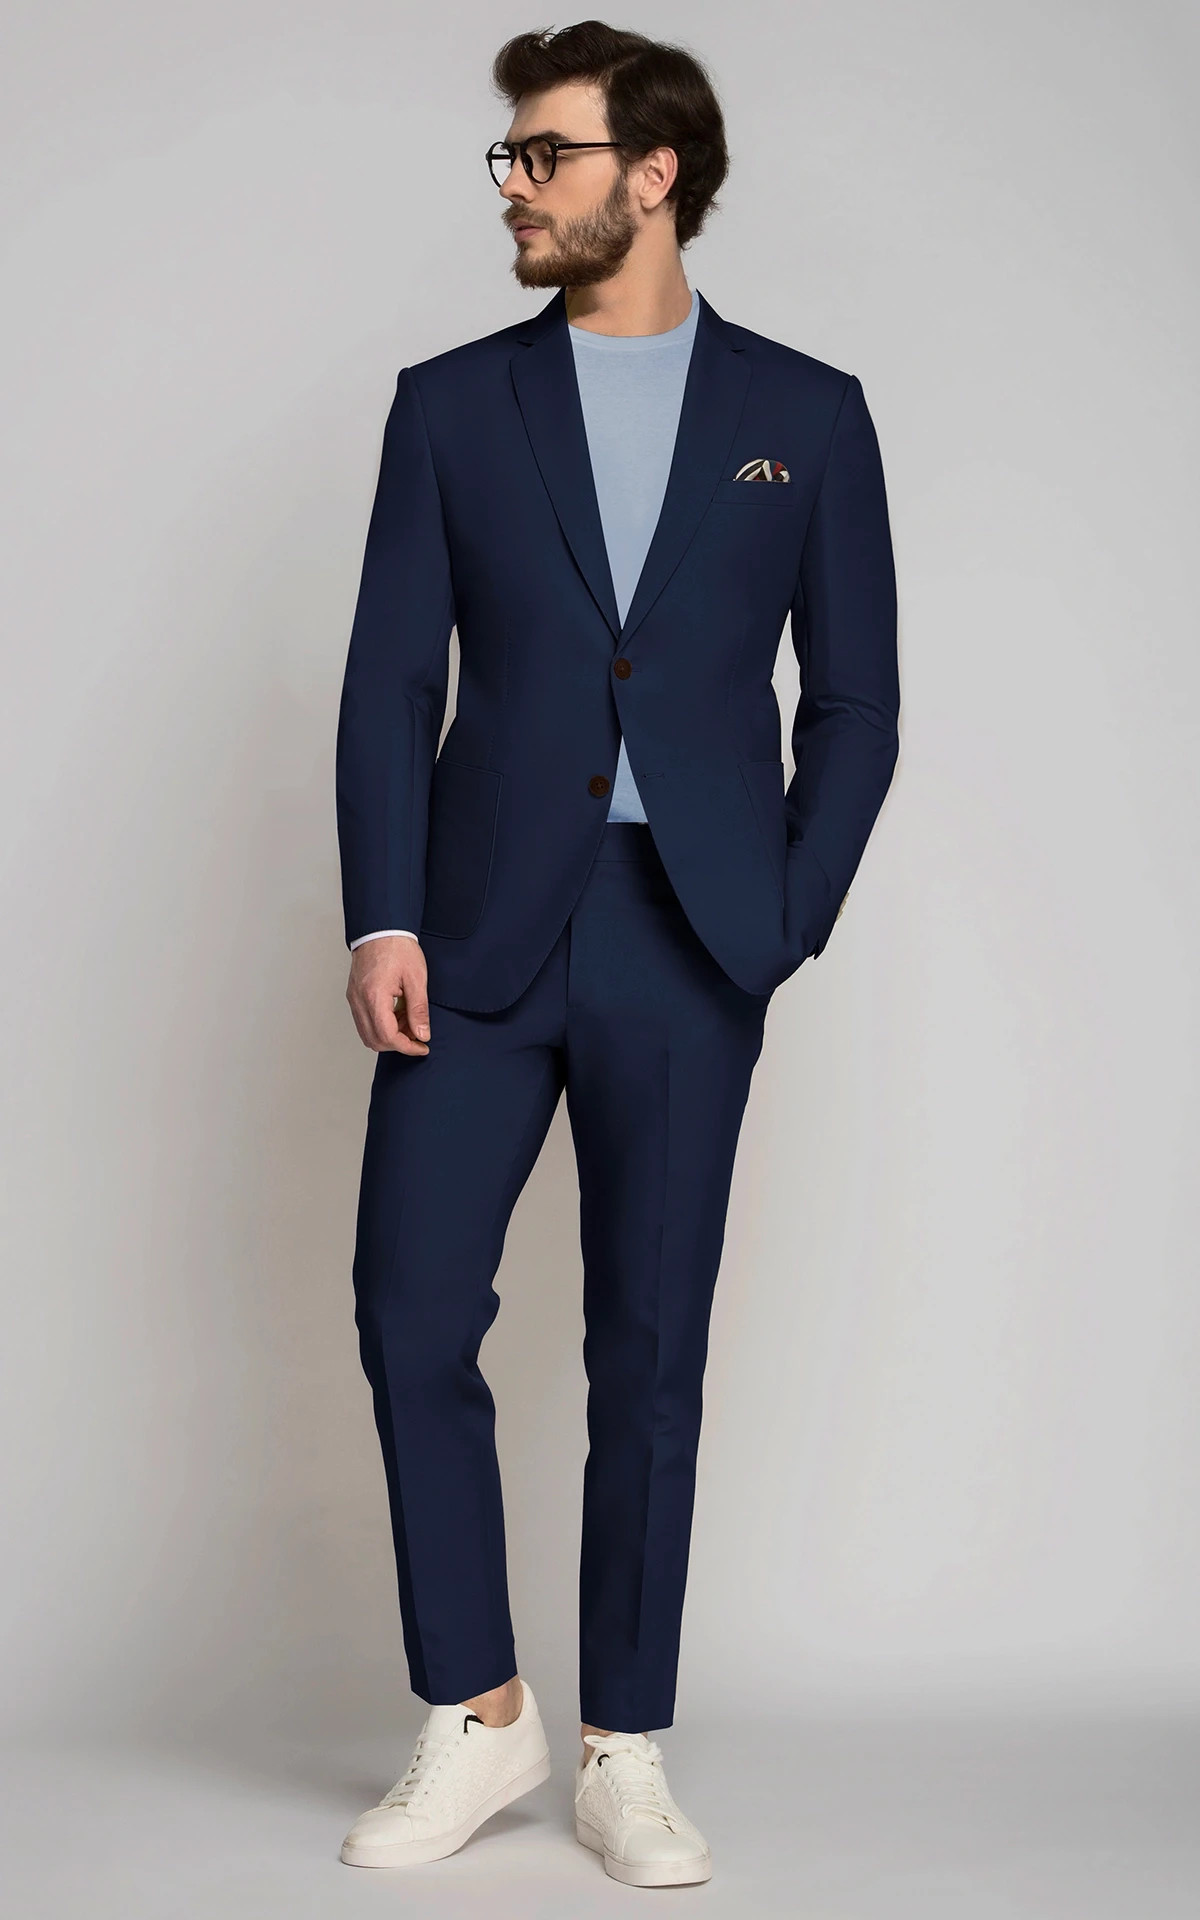 Men Custom-Tailored Suit Order